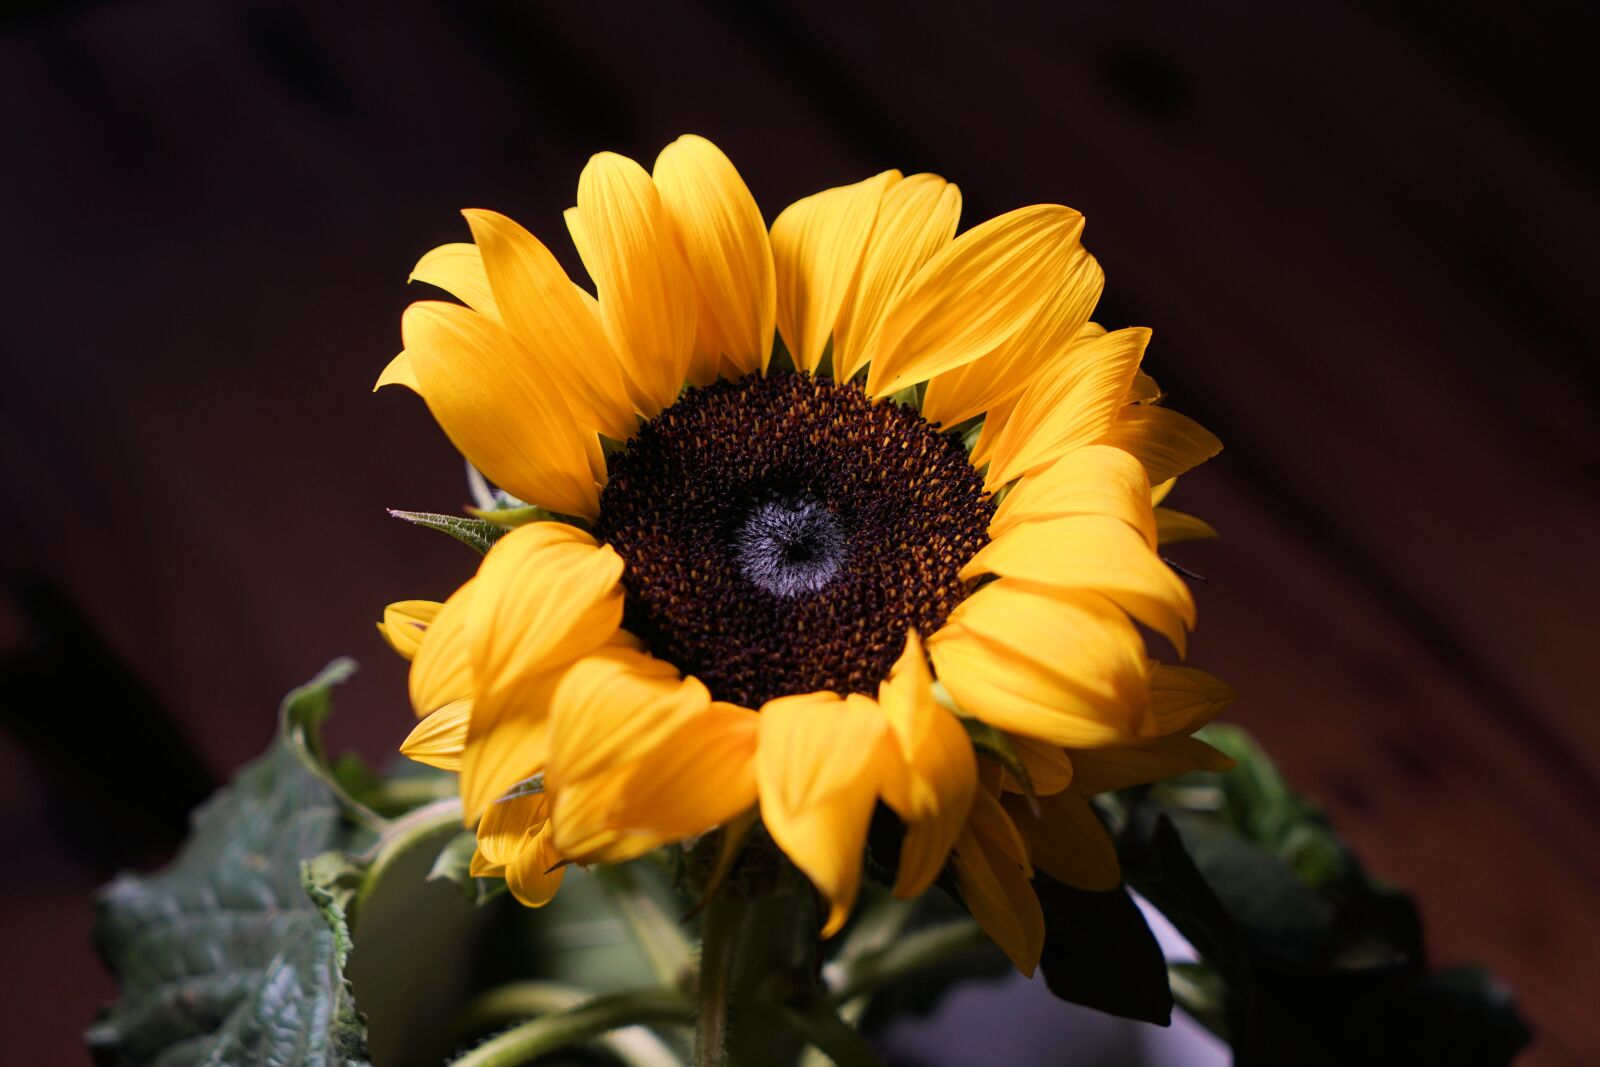 Sony Vario Tessar T* FE 24-70mm F4 ZA OSS sample photo. Sunflower, sun, flower photography